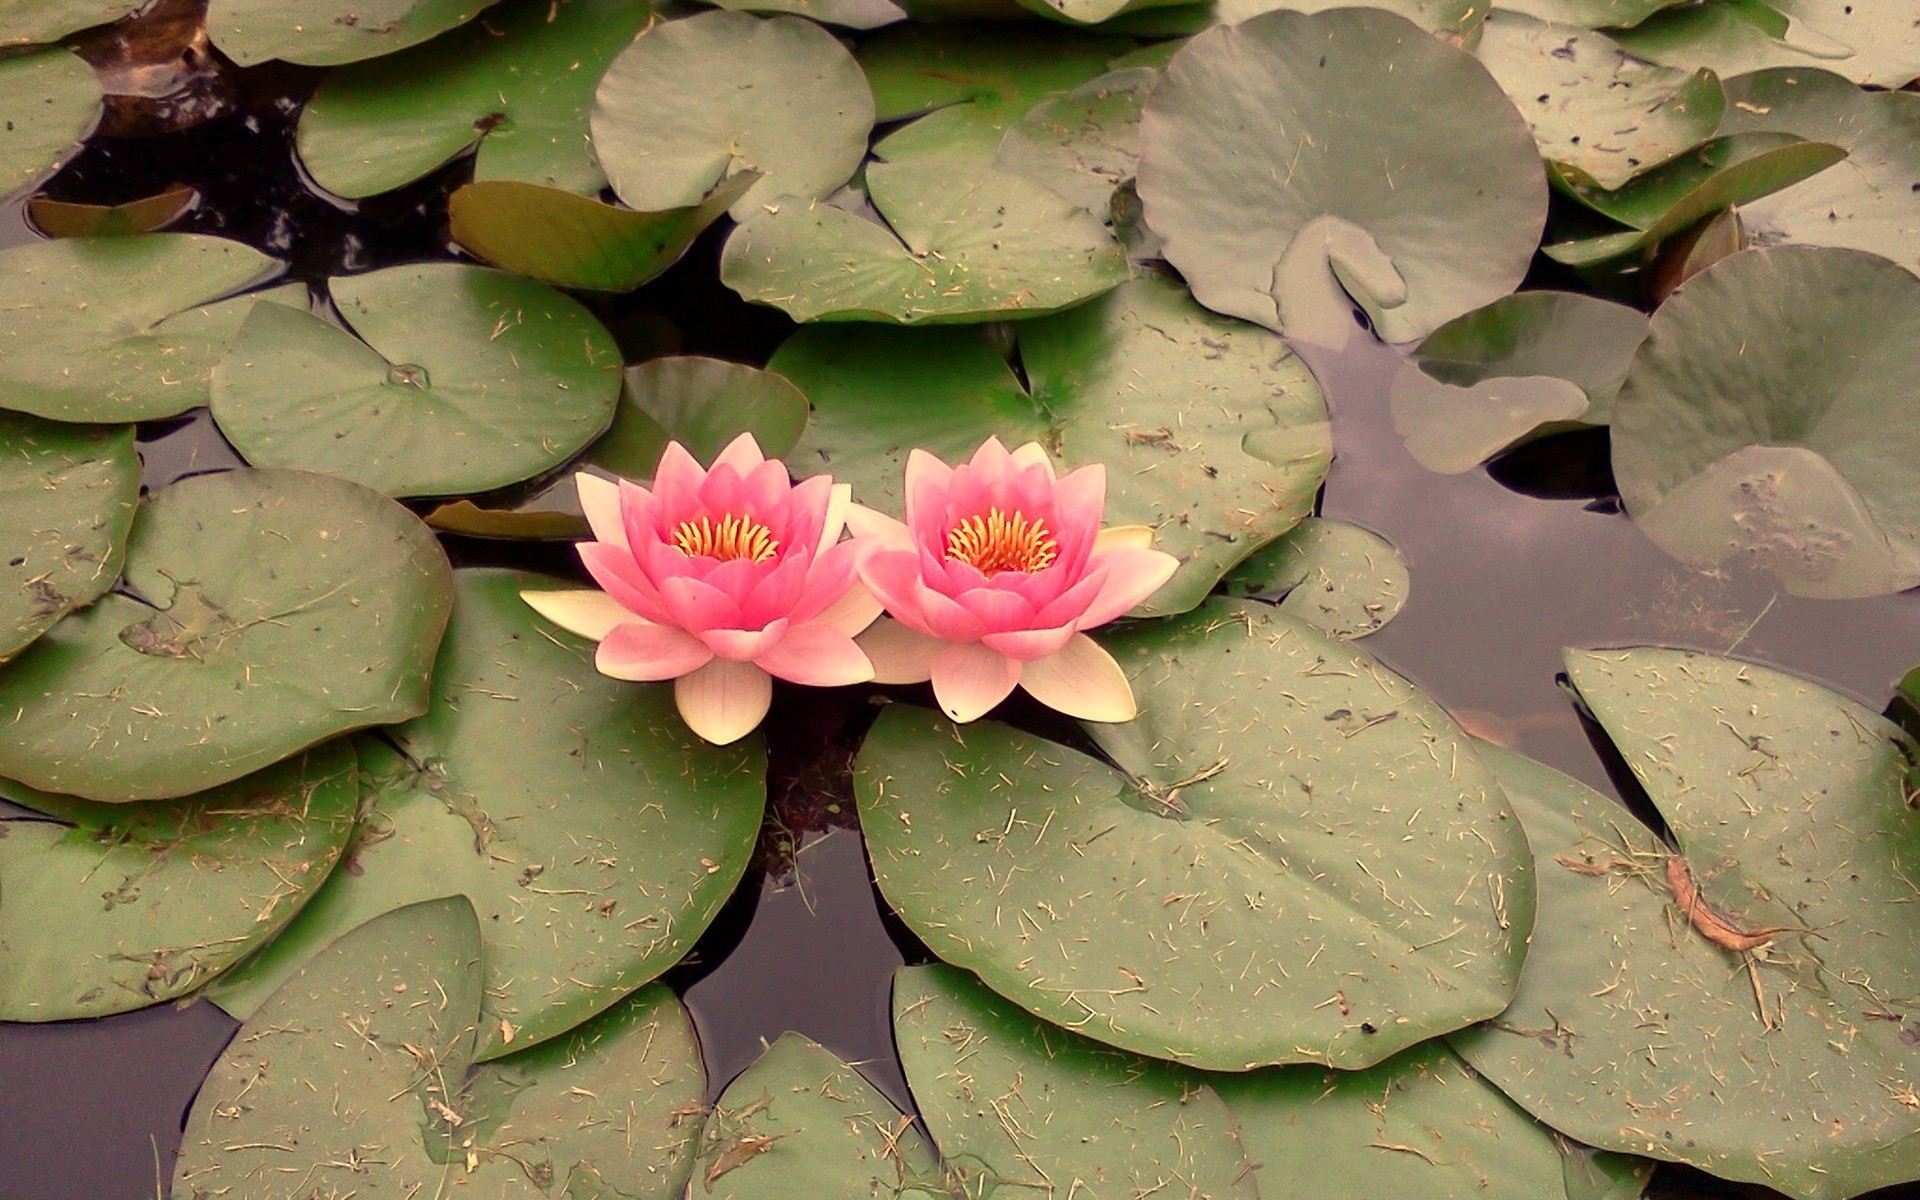 цветы бассейн лотос лили цветок лист кувшинка флора блюминг плавание водный сад цветочные экзотические тропический ботанический крупным планом дзен природа красивые